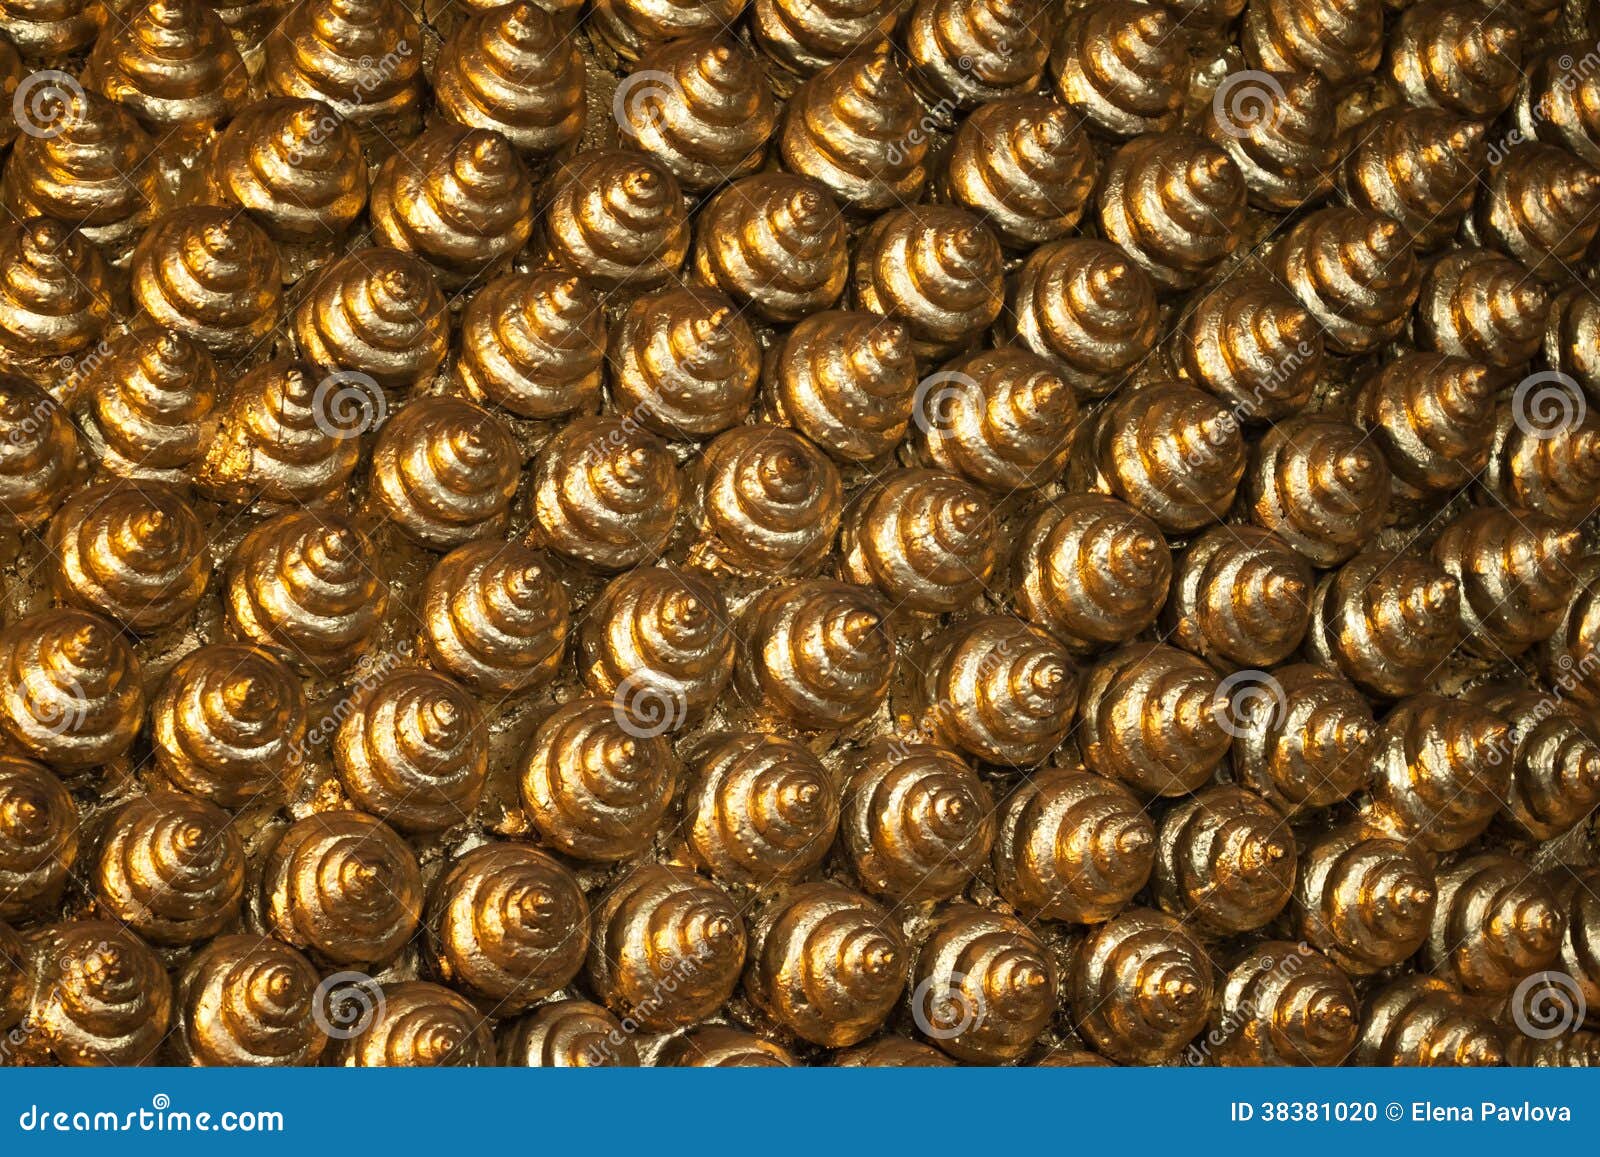 υπόβαθρο 025 των χρυσών κοχυλιών. Το υπόβαθρο των χρυσών κοχυλιών, αρχιτεκτονική διακόσμηση της Royal Palace στη Μπανγκόκ, Ταϊλάνδη